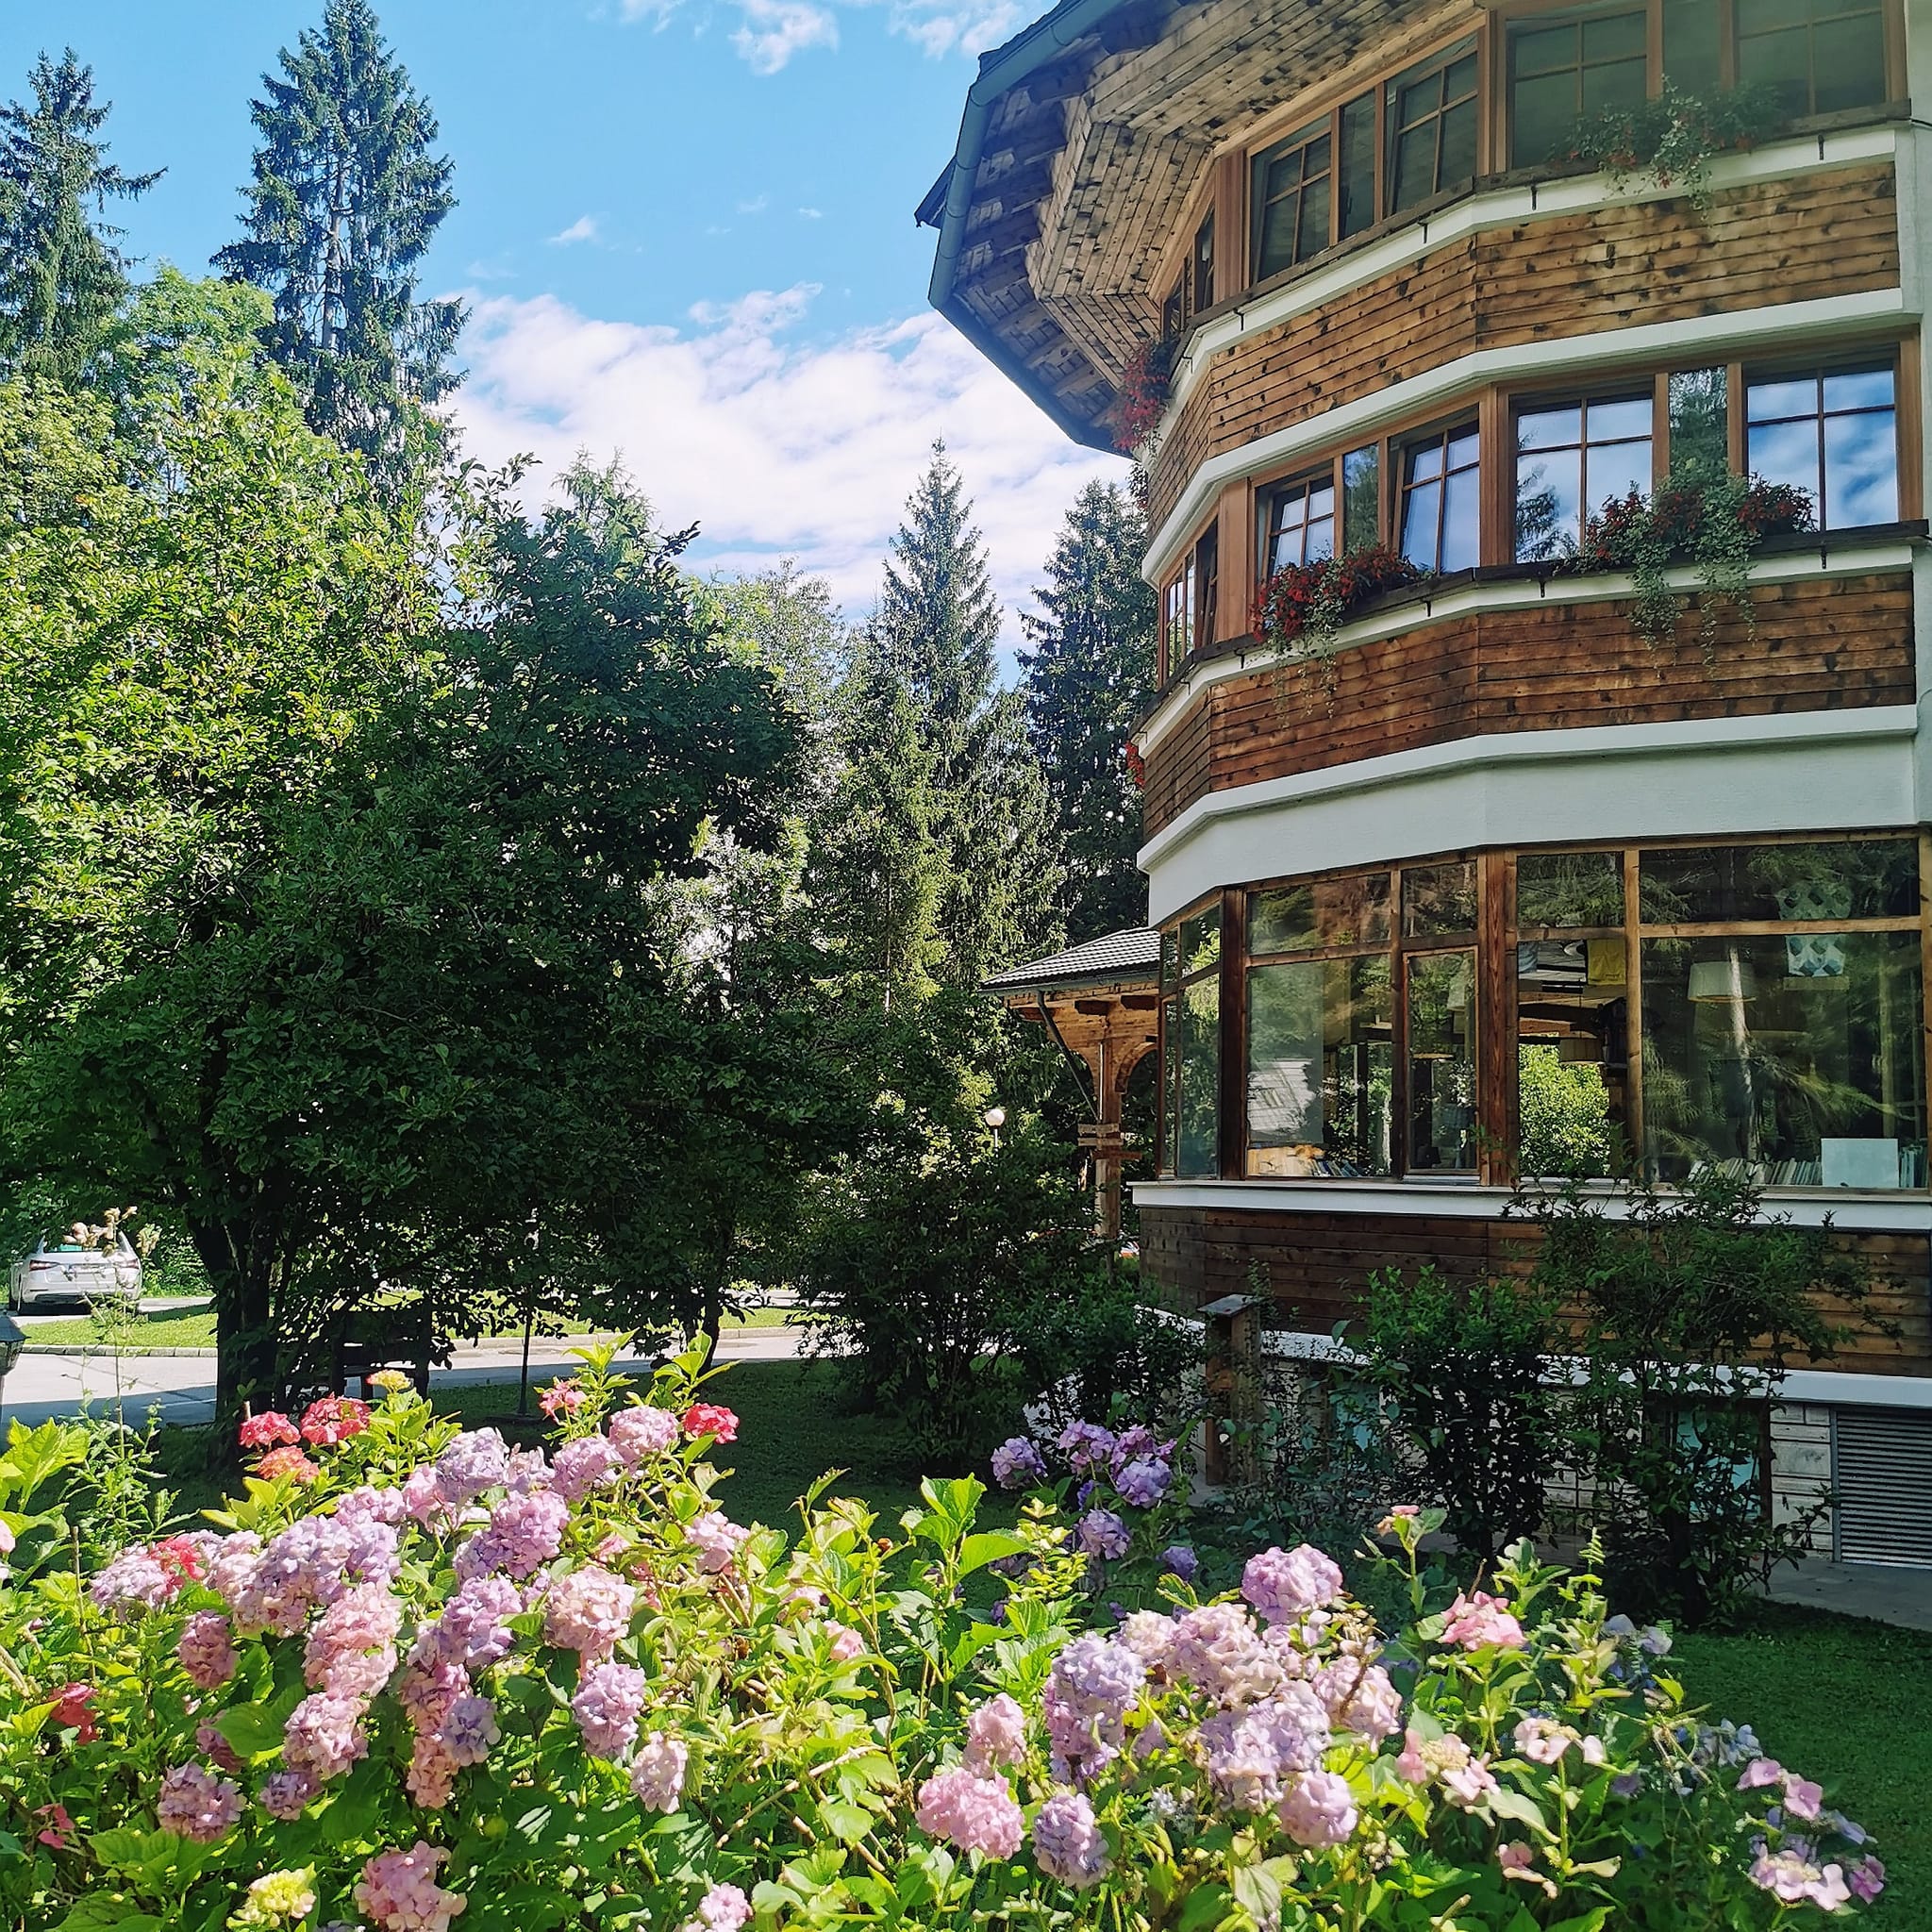 Ribno Alpine Resort - Slovenia